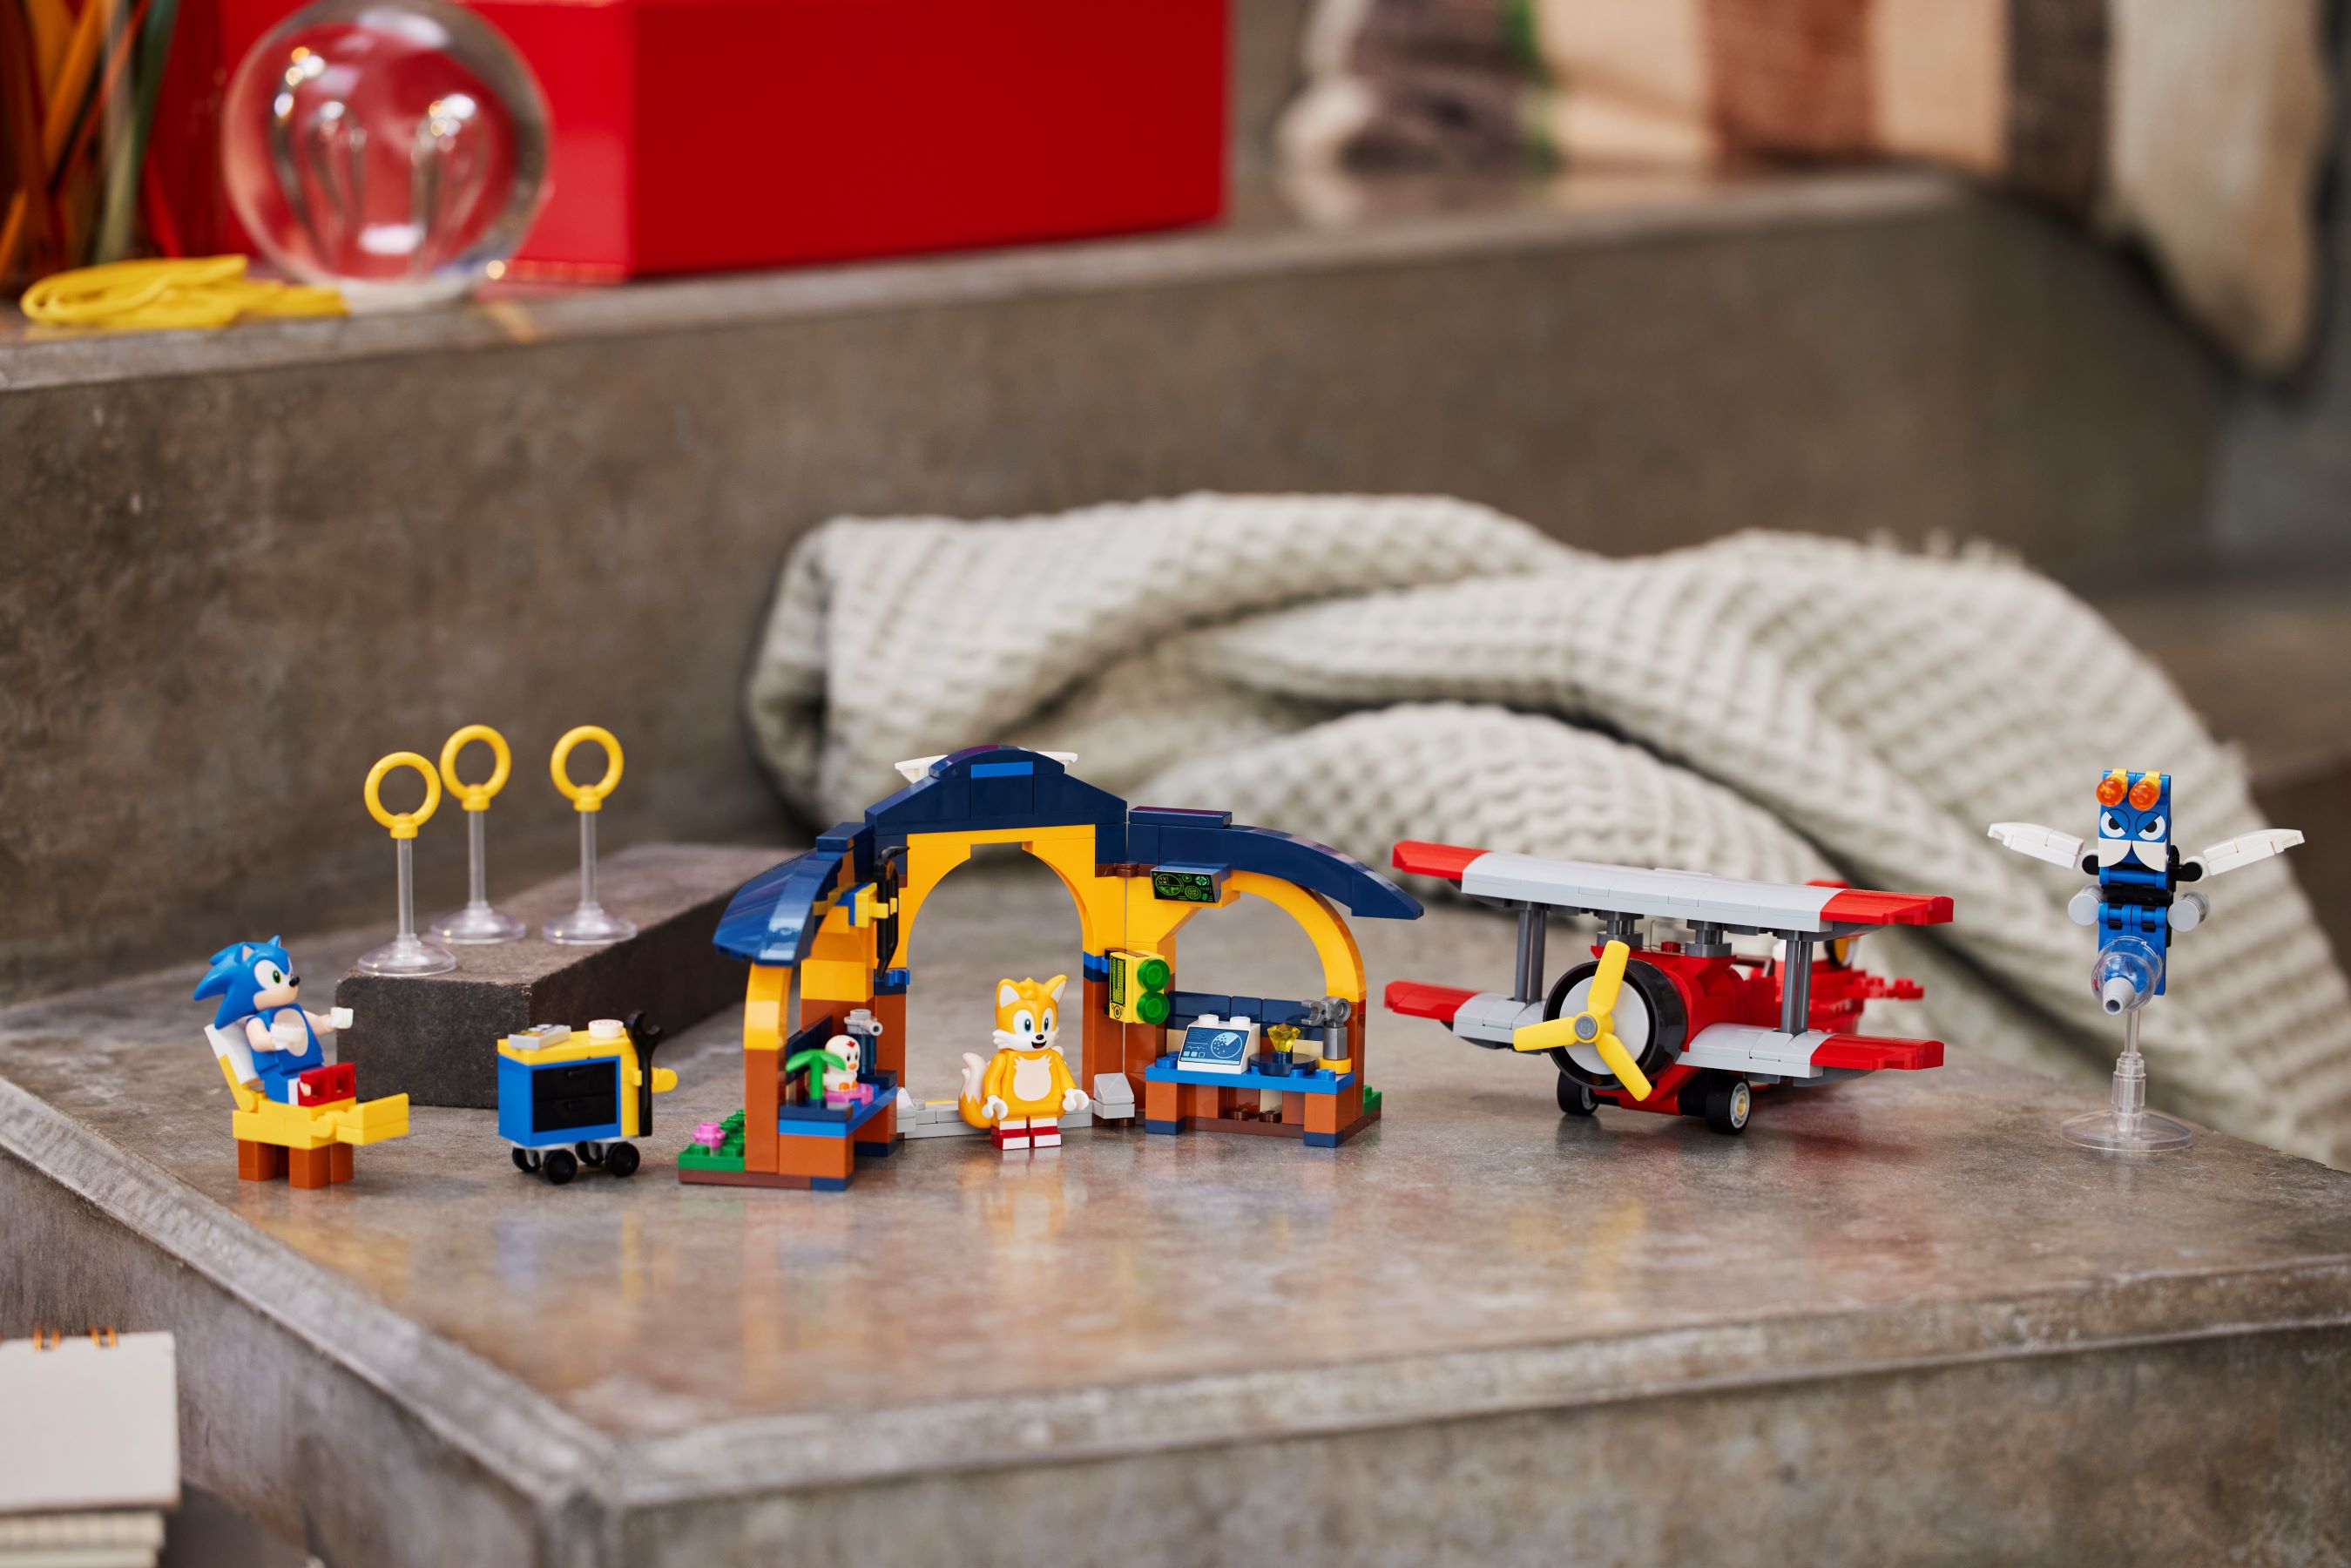 Lego-sonic o ouriço™Building Block Toys for Kids, Tails' Workshop, Tornado  Plane, Aniversário, Natal, Presente de Ano Novo, 76991 - AliExpress